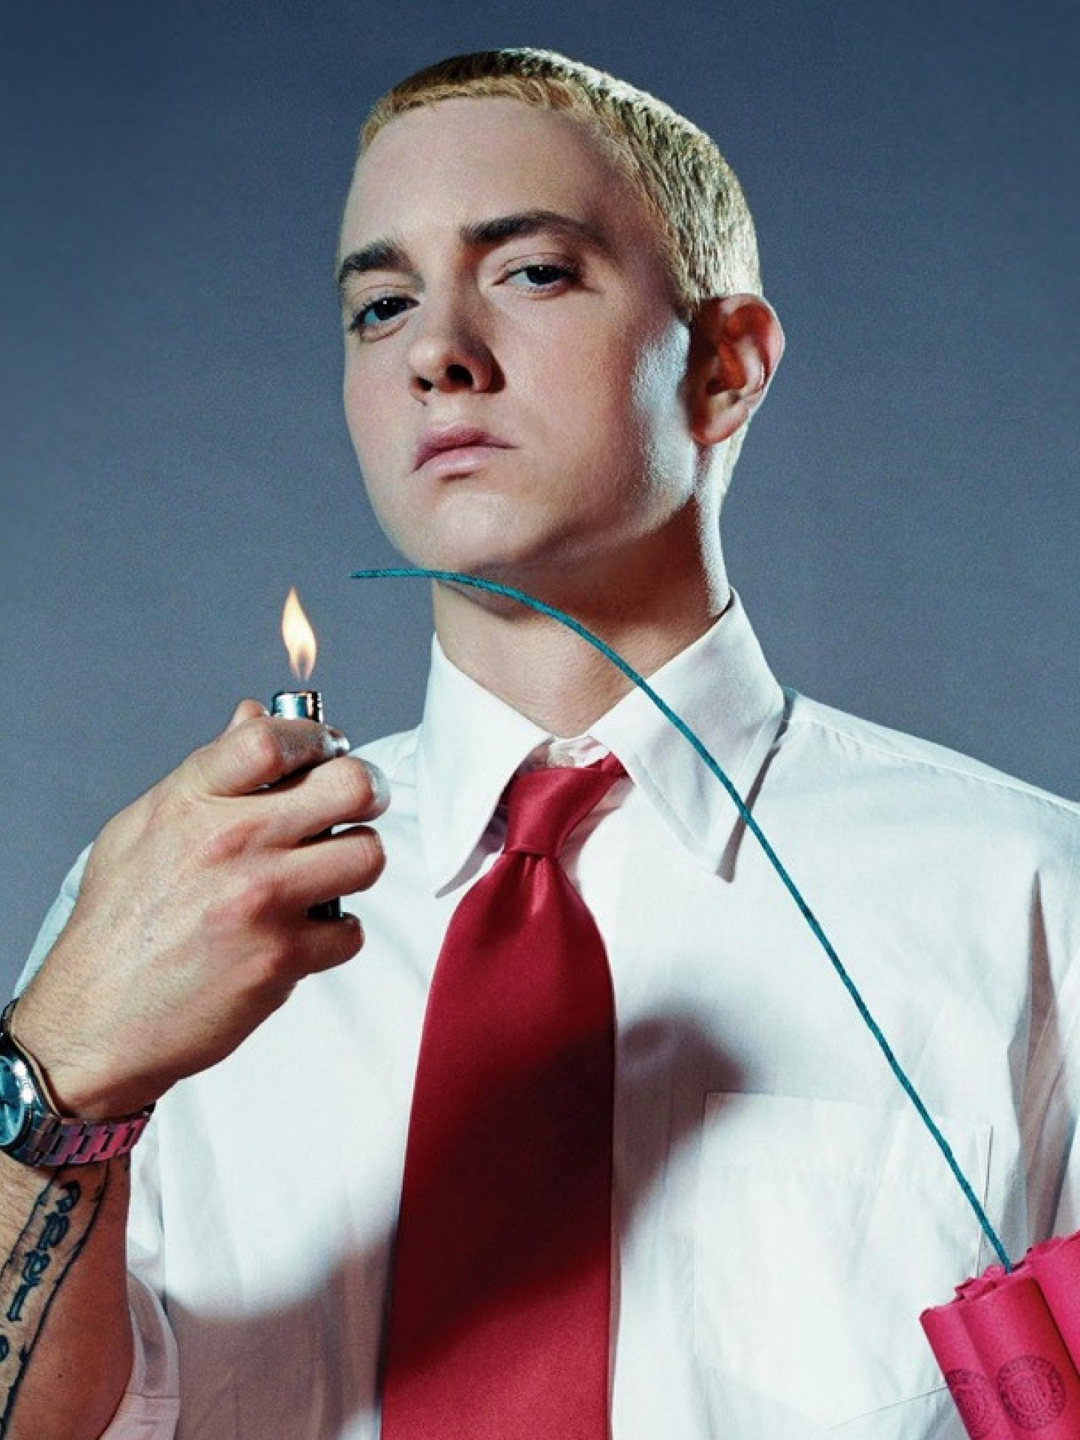 Eminem background